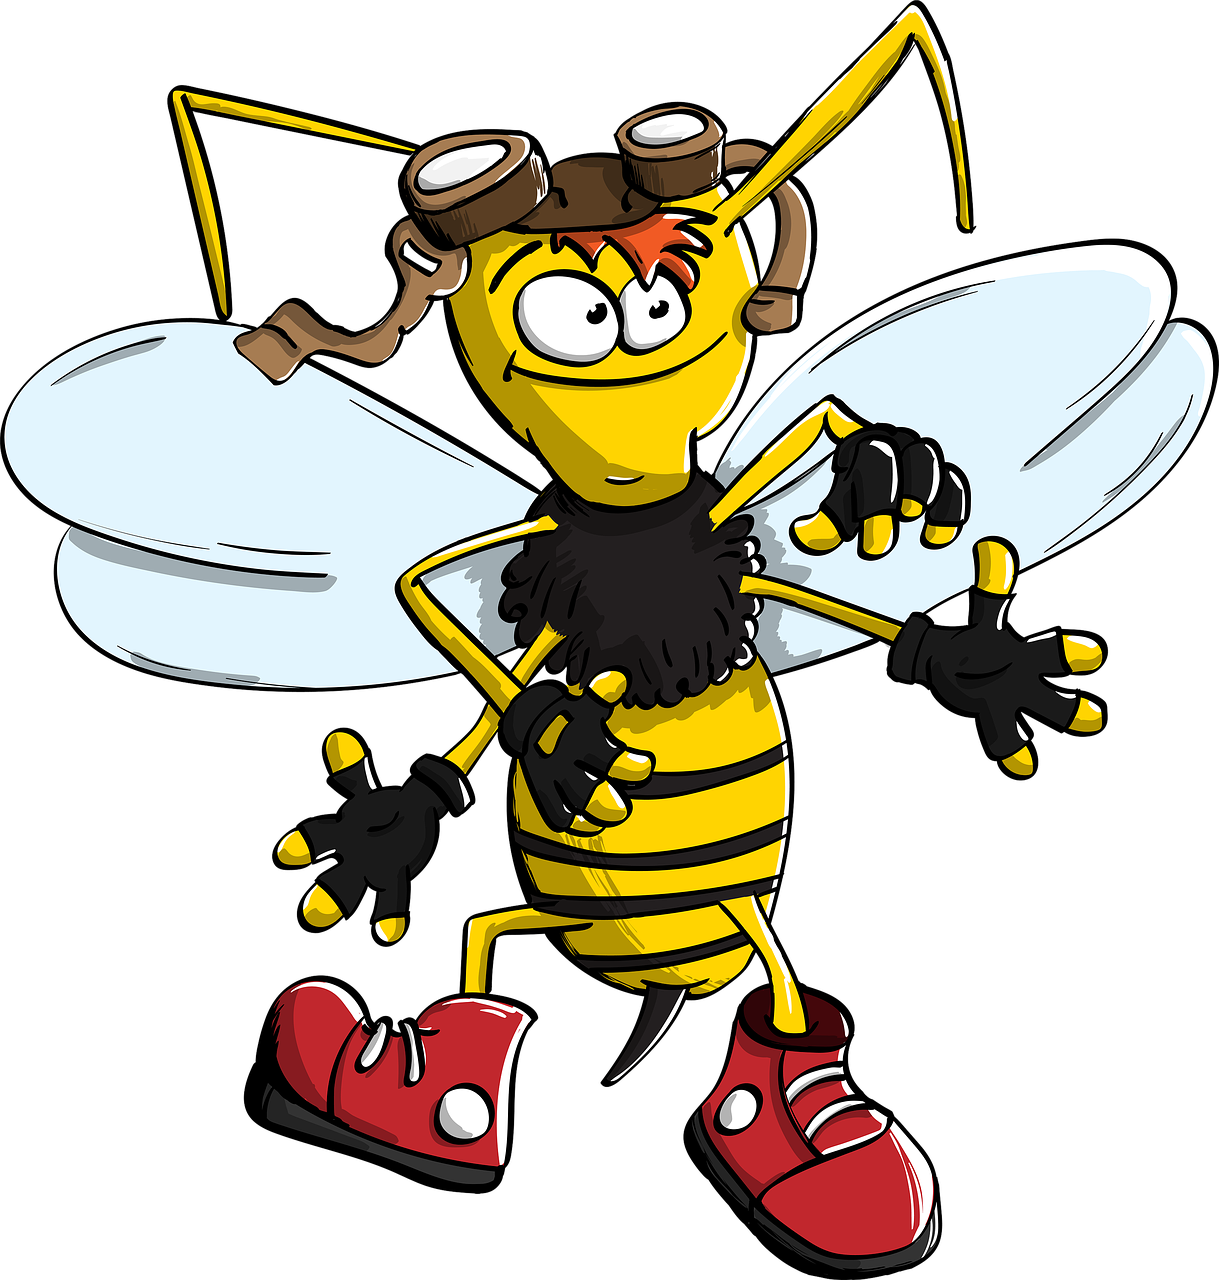 bumblebee wasp bee free photo